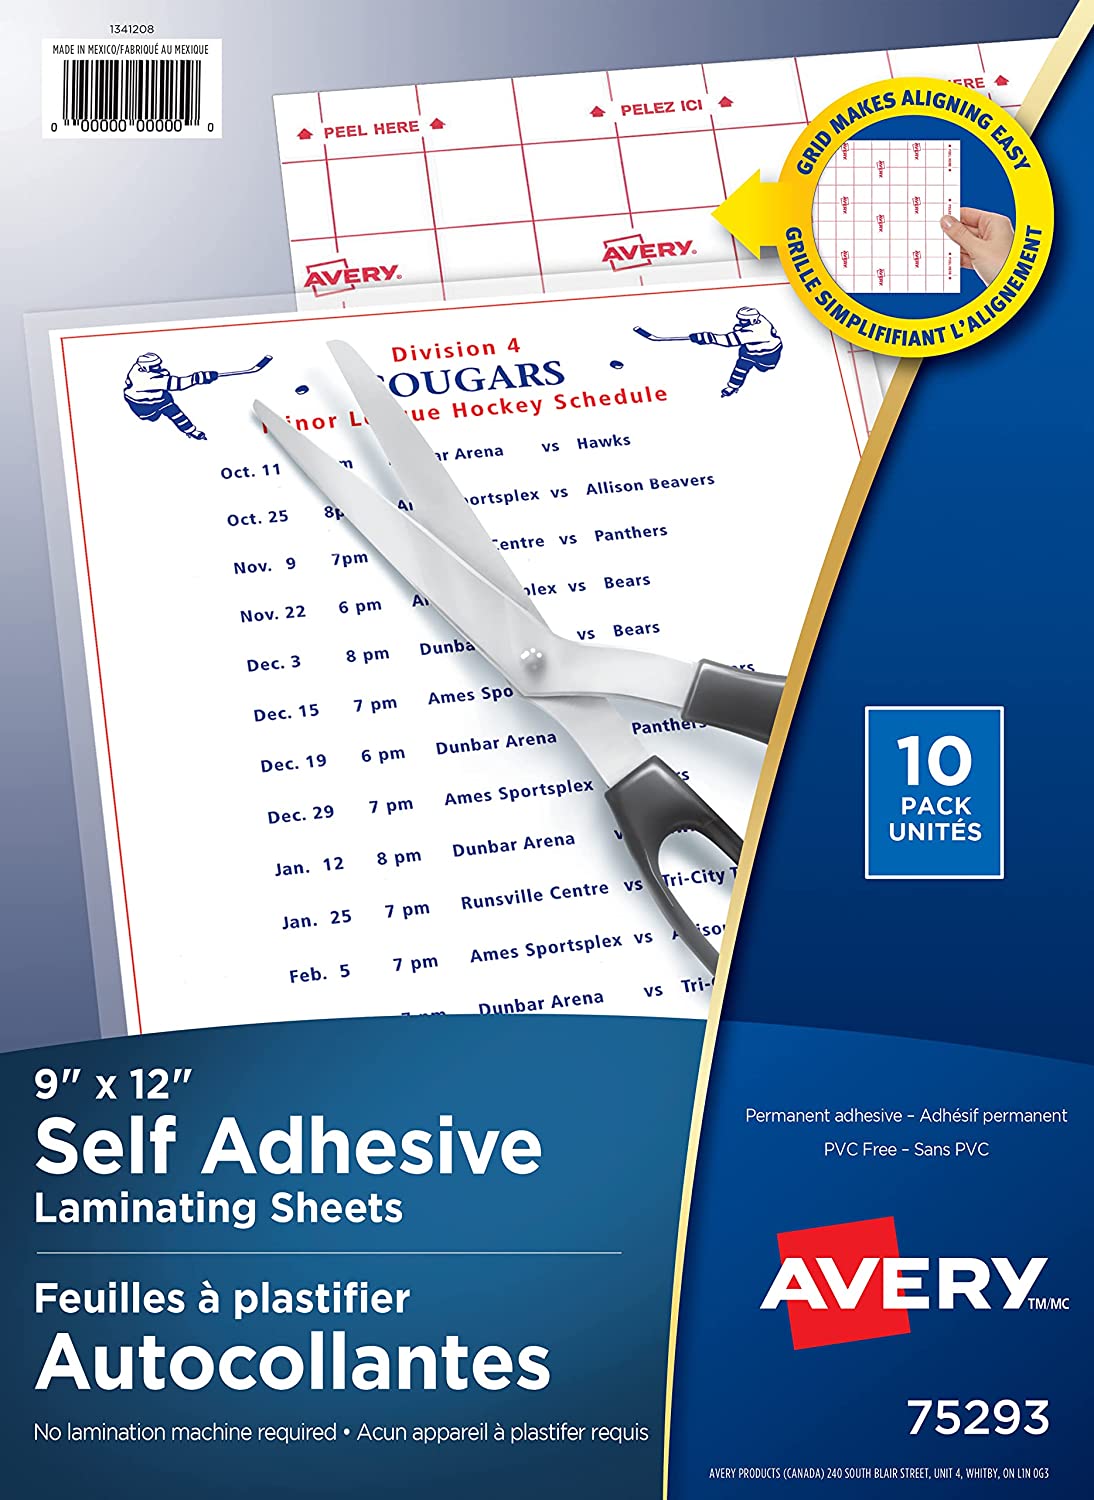 Avery Clear Laminating Sheets, 9 x 12, Permanent Self-Adhesive, 10 Sheets  (73603)